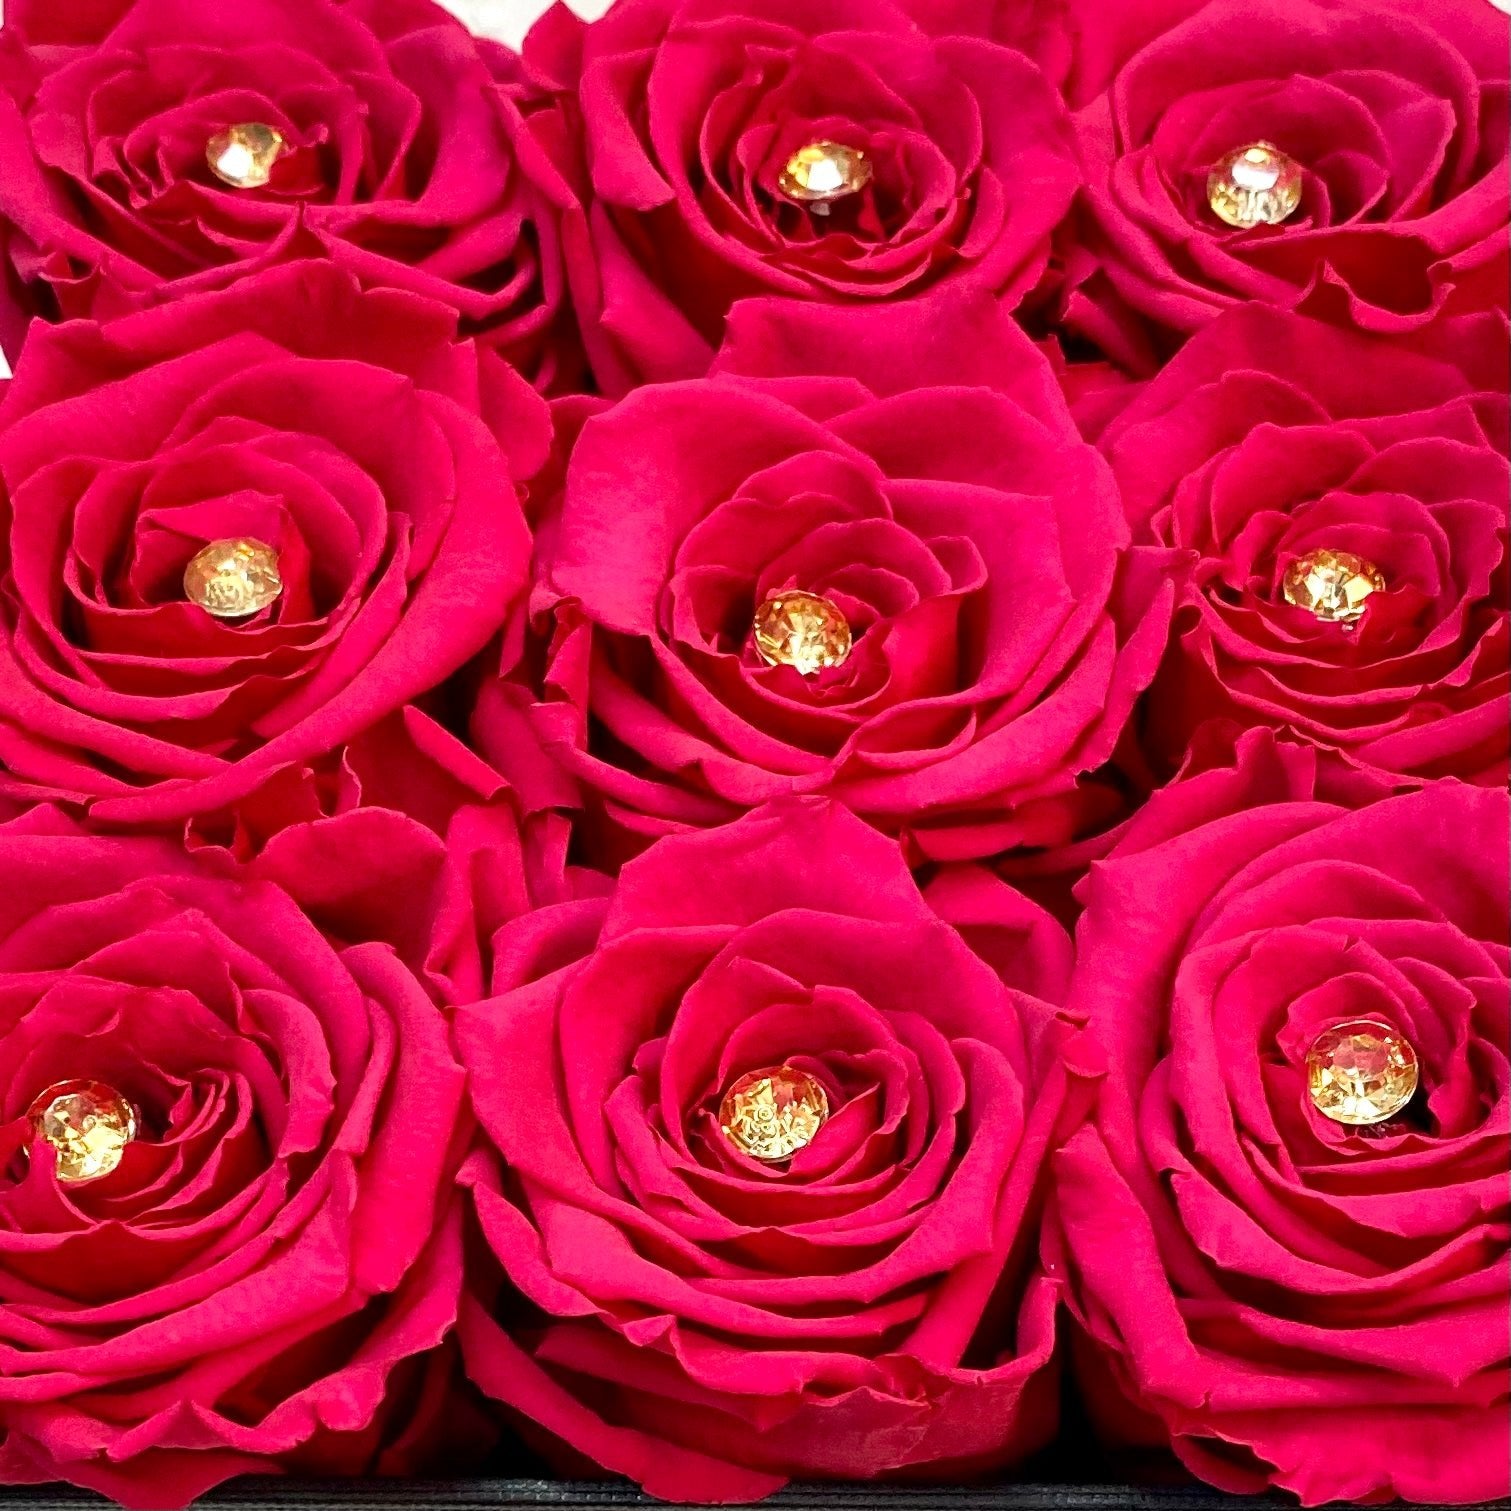 Diamanté option | Pink Roses with diamanté in each| Bling Blooms 